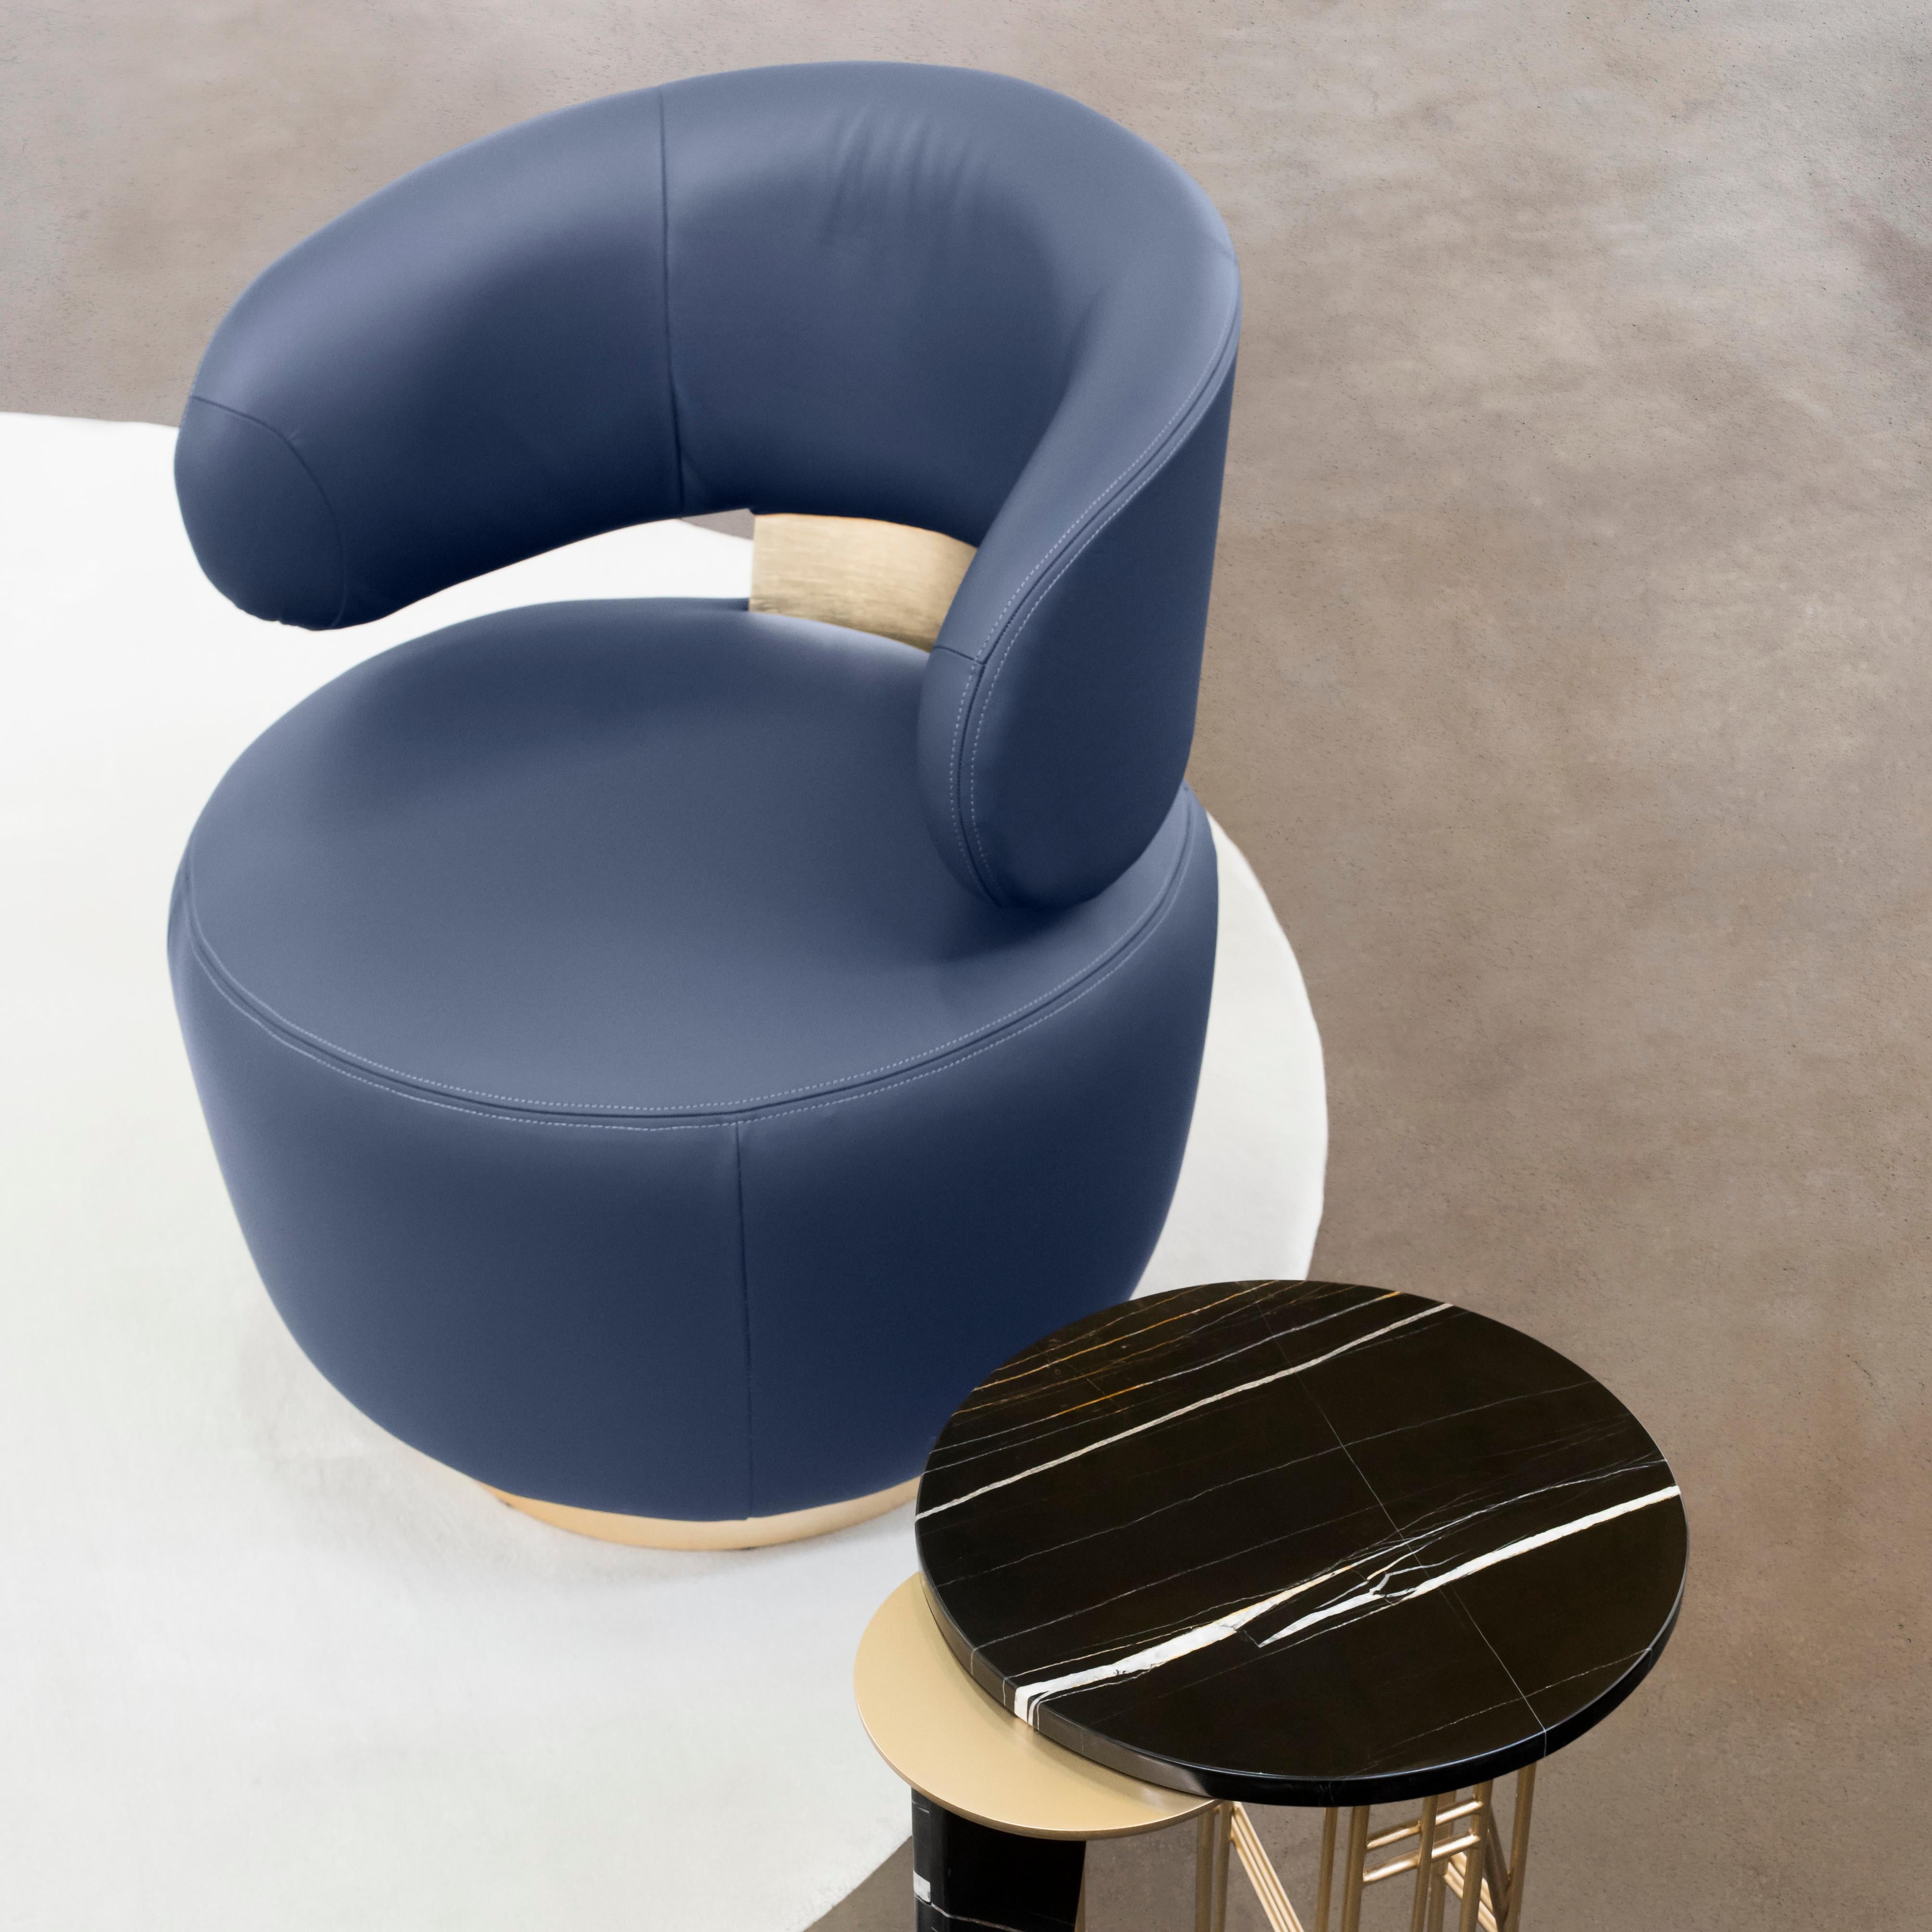 Caju Swivel Lounge Chair, Contemporary Collection, handgefertigt in Portugal - Europa von Greenapple.

Der Loungesessel Caju ist ein trendiges Möbelstück, das die organische Form einer Cashew verkörpert. Das Design des mit italienischem Leder